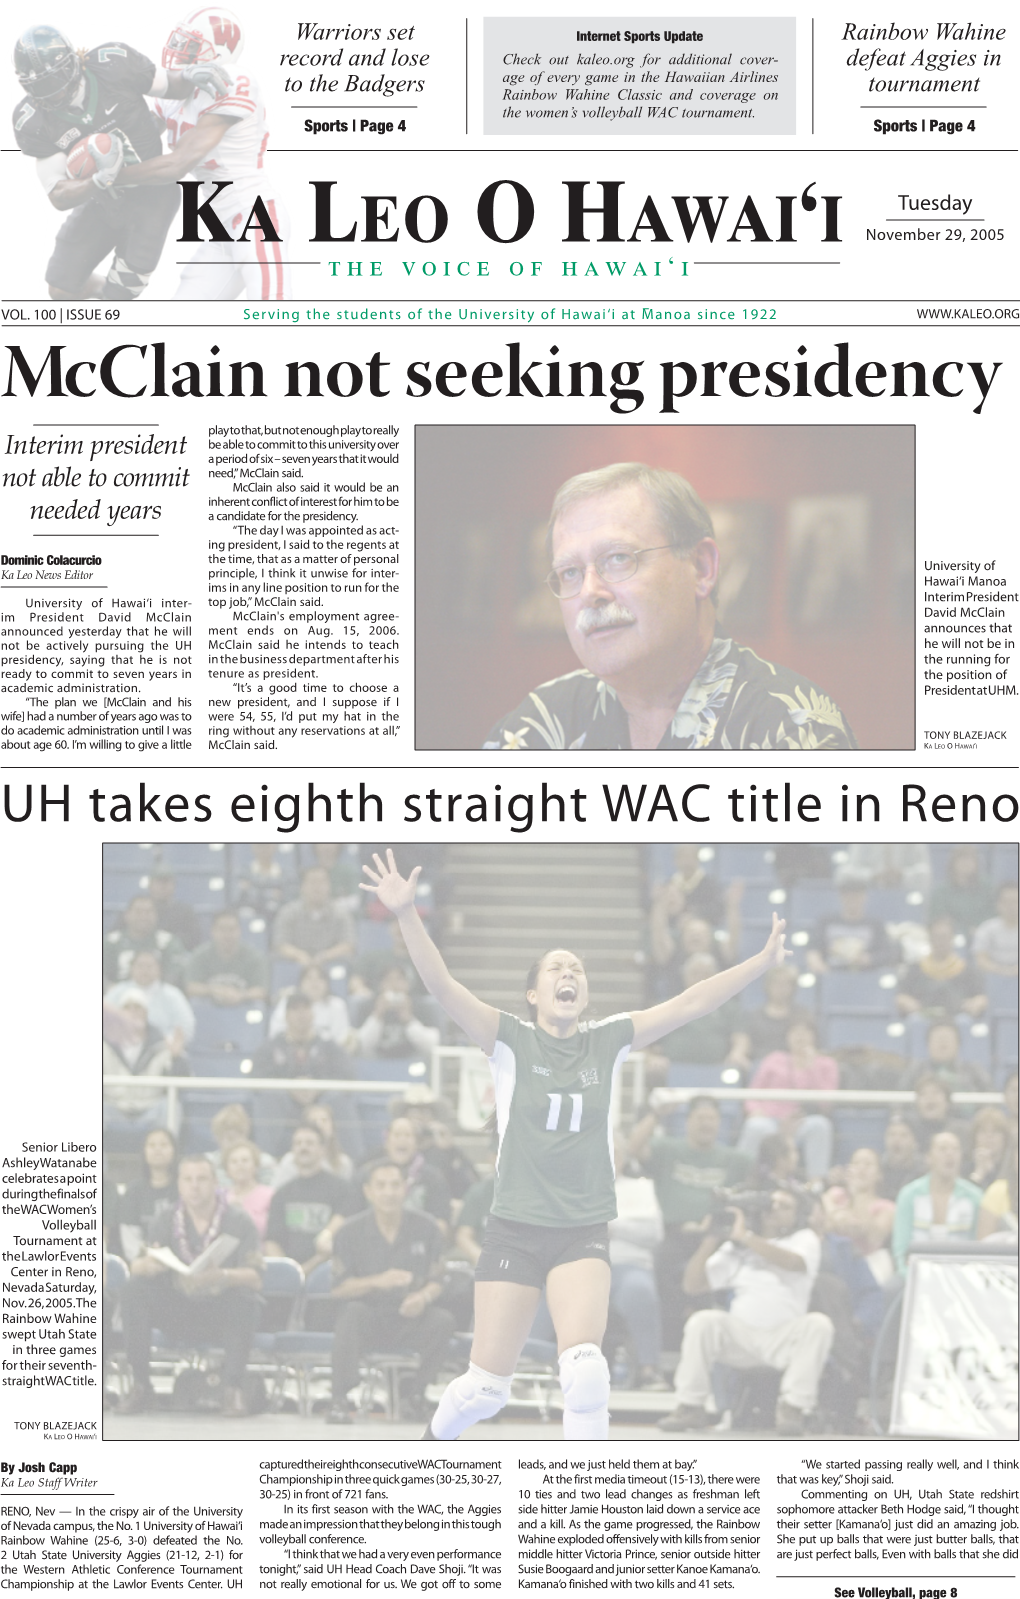 Mcclain Not Seeking Presidency